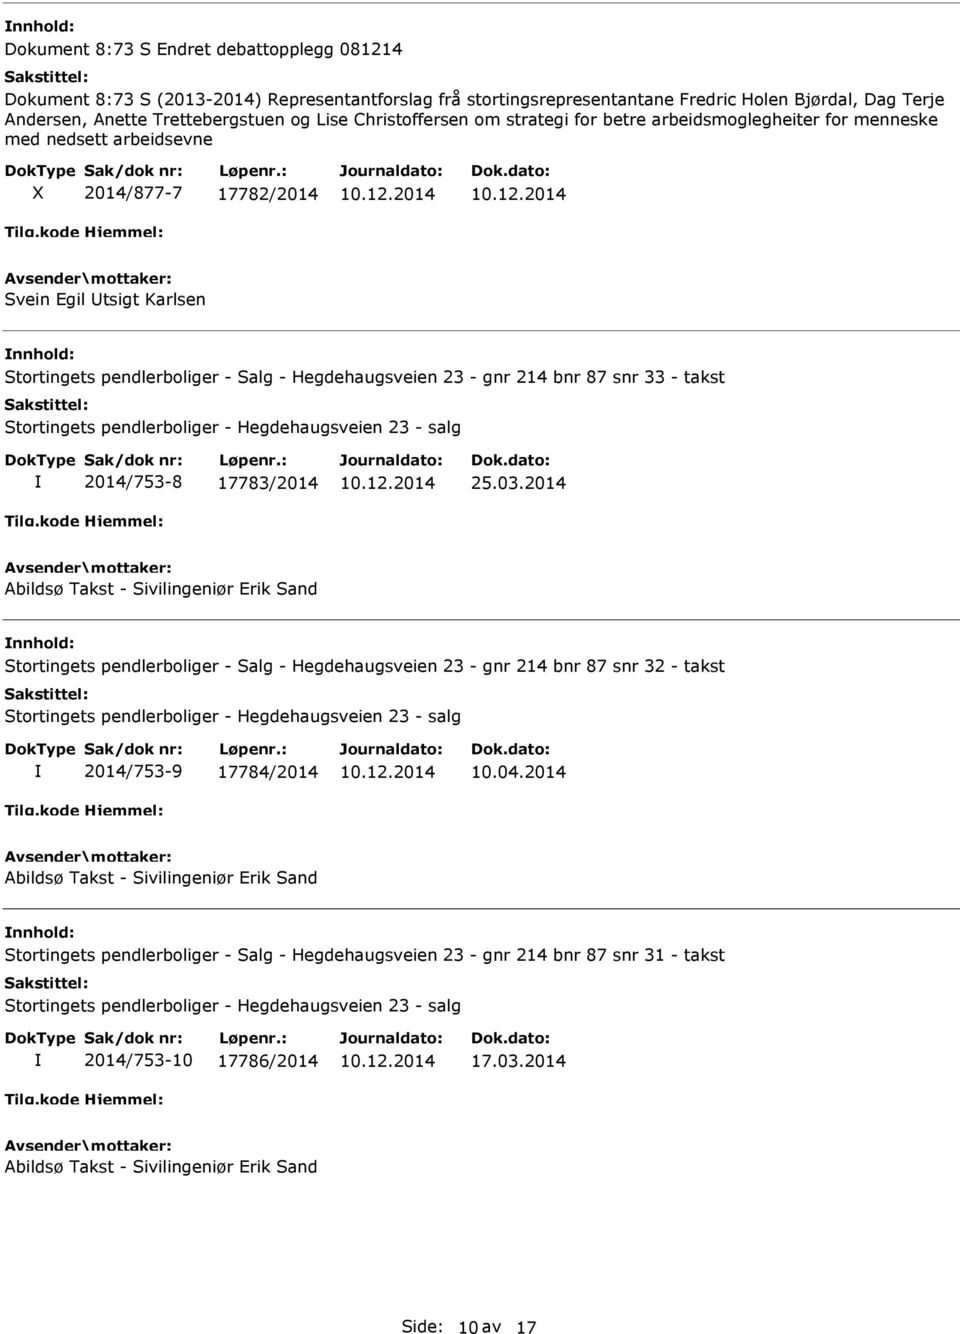 takst Stortingets pendlerboliger - Hegdehaugsveien 23 - salg 2014/753-8 17783/2014 25.03.